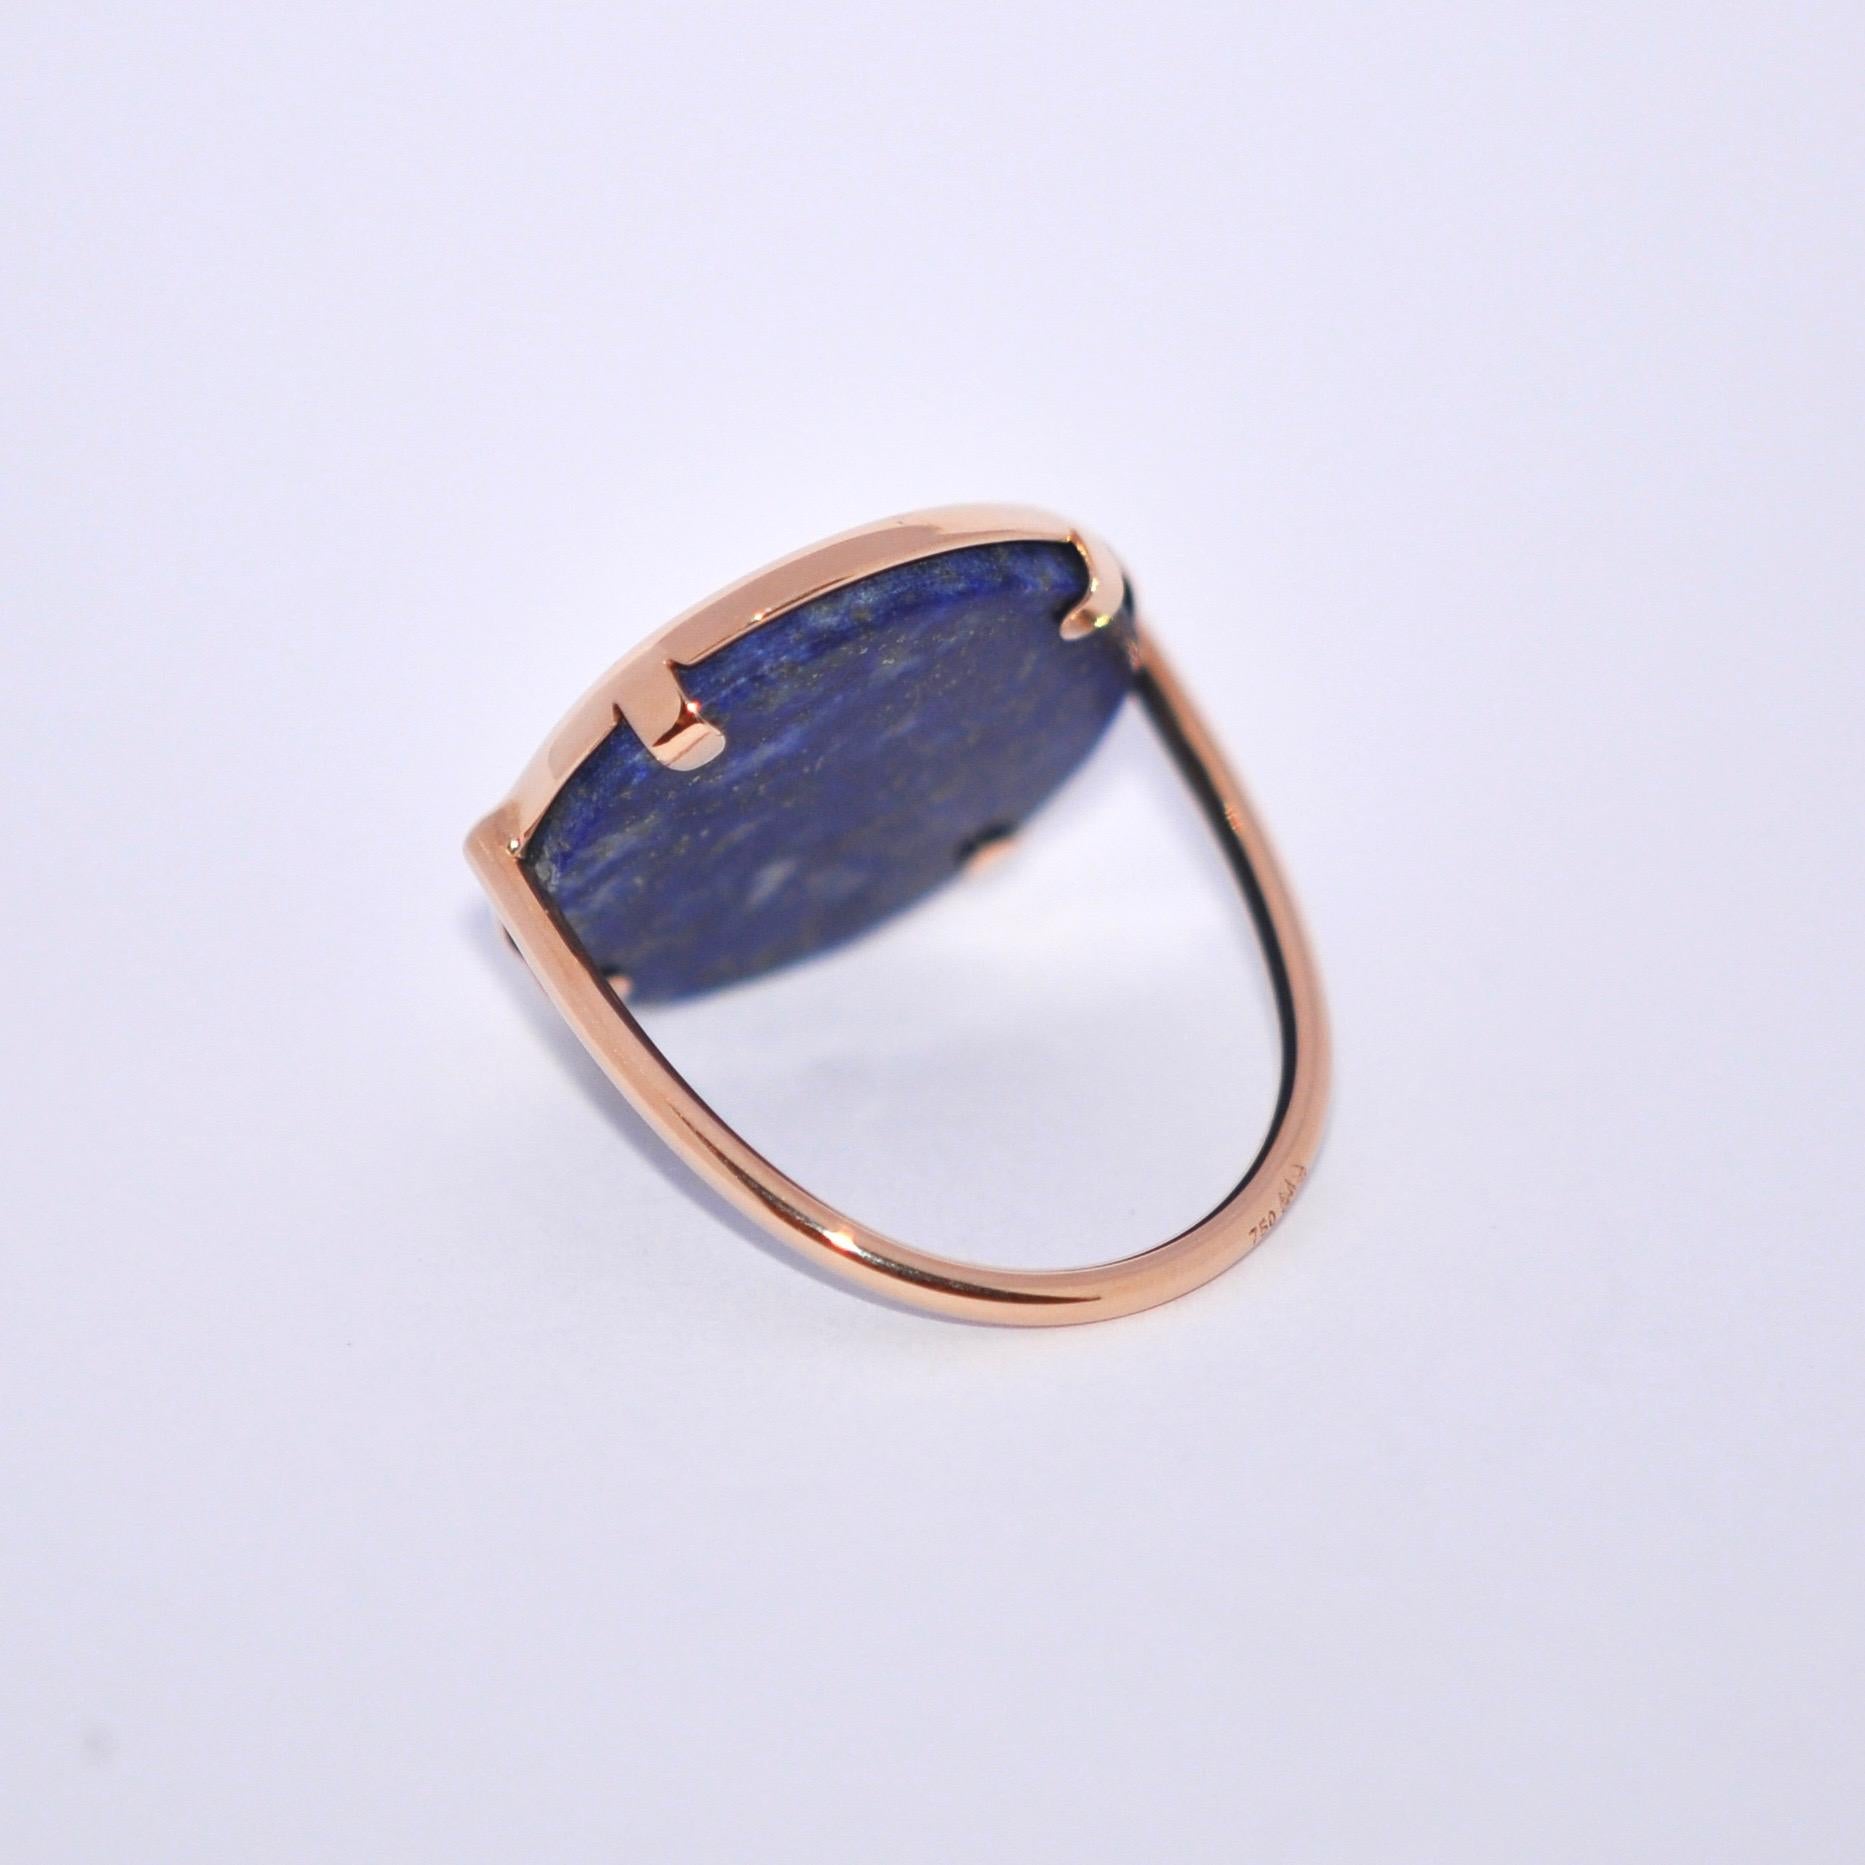 Uncut Round Lapis Lazuli and Rose Gold 18 Karat Cocktail Ring